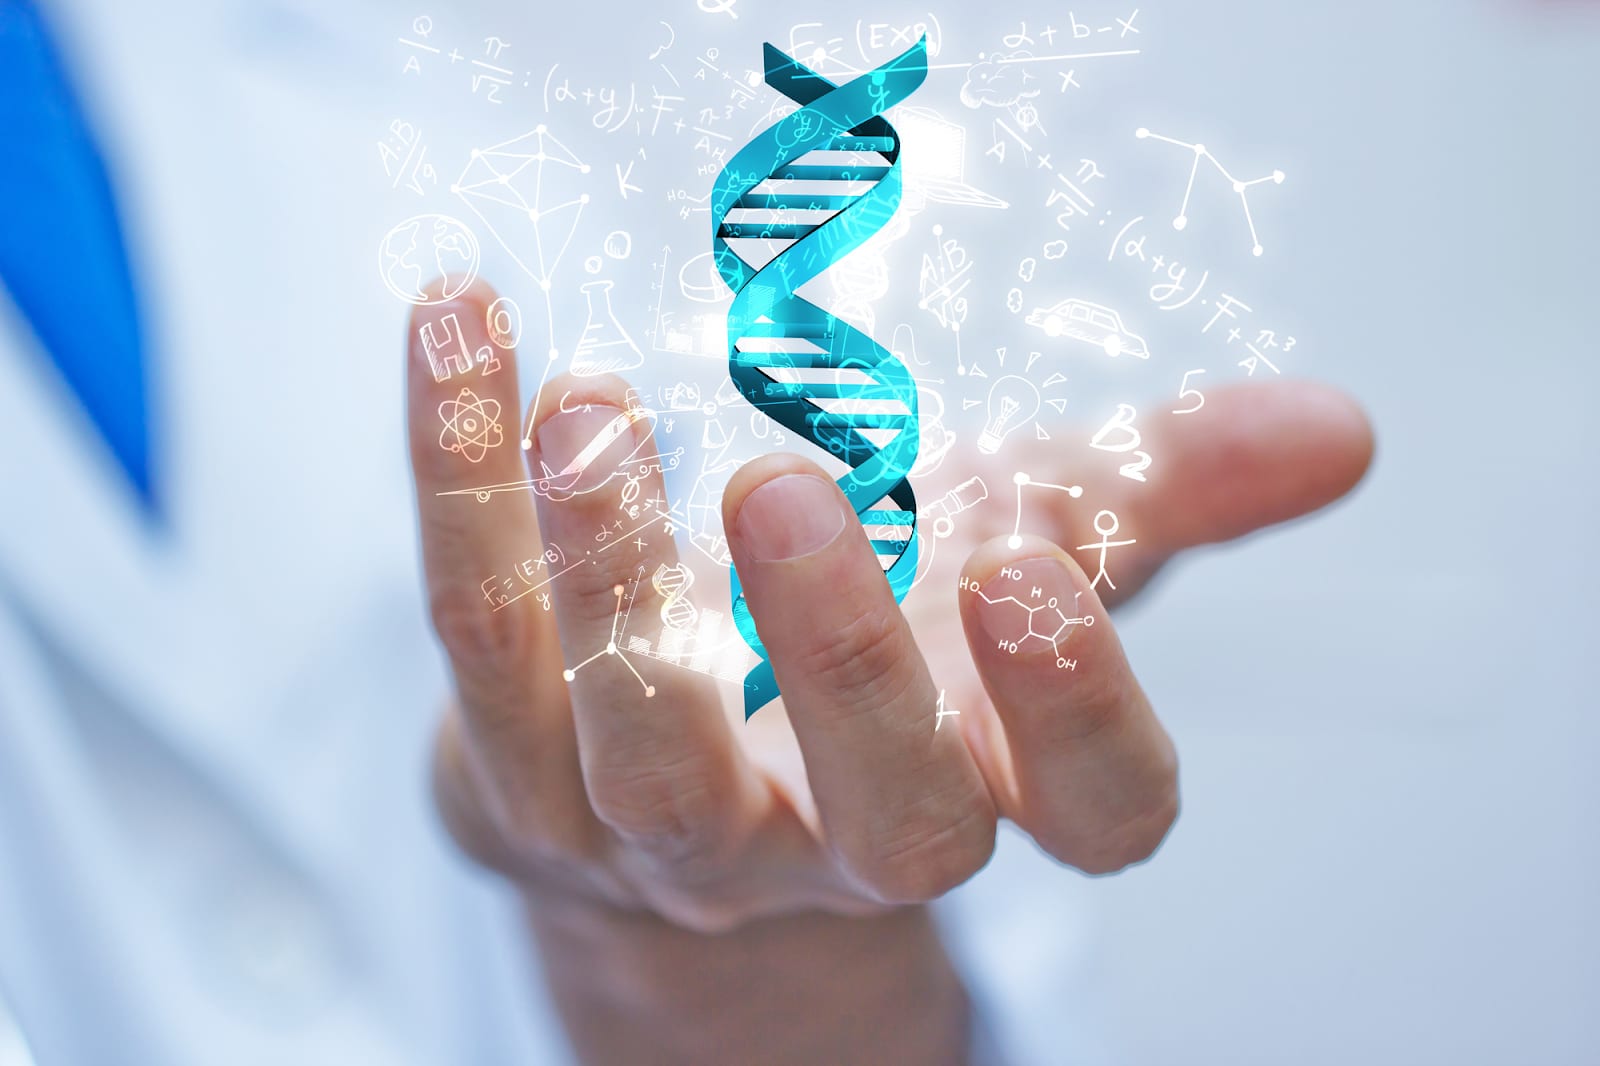 Phương pháp xét nghiệm ADN bằng móng tay liệu có hiệu quả không?